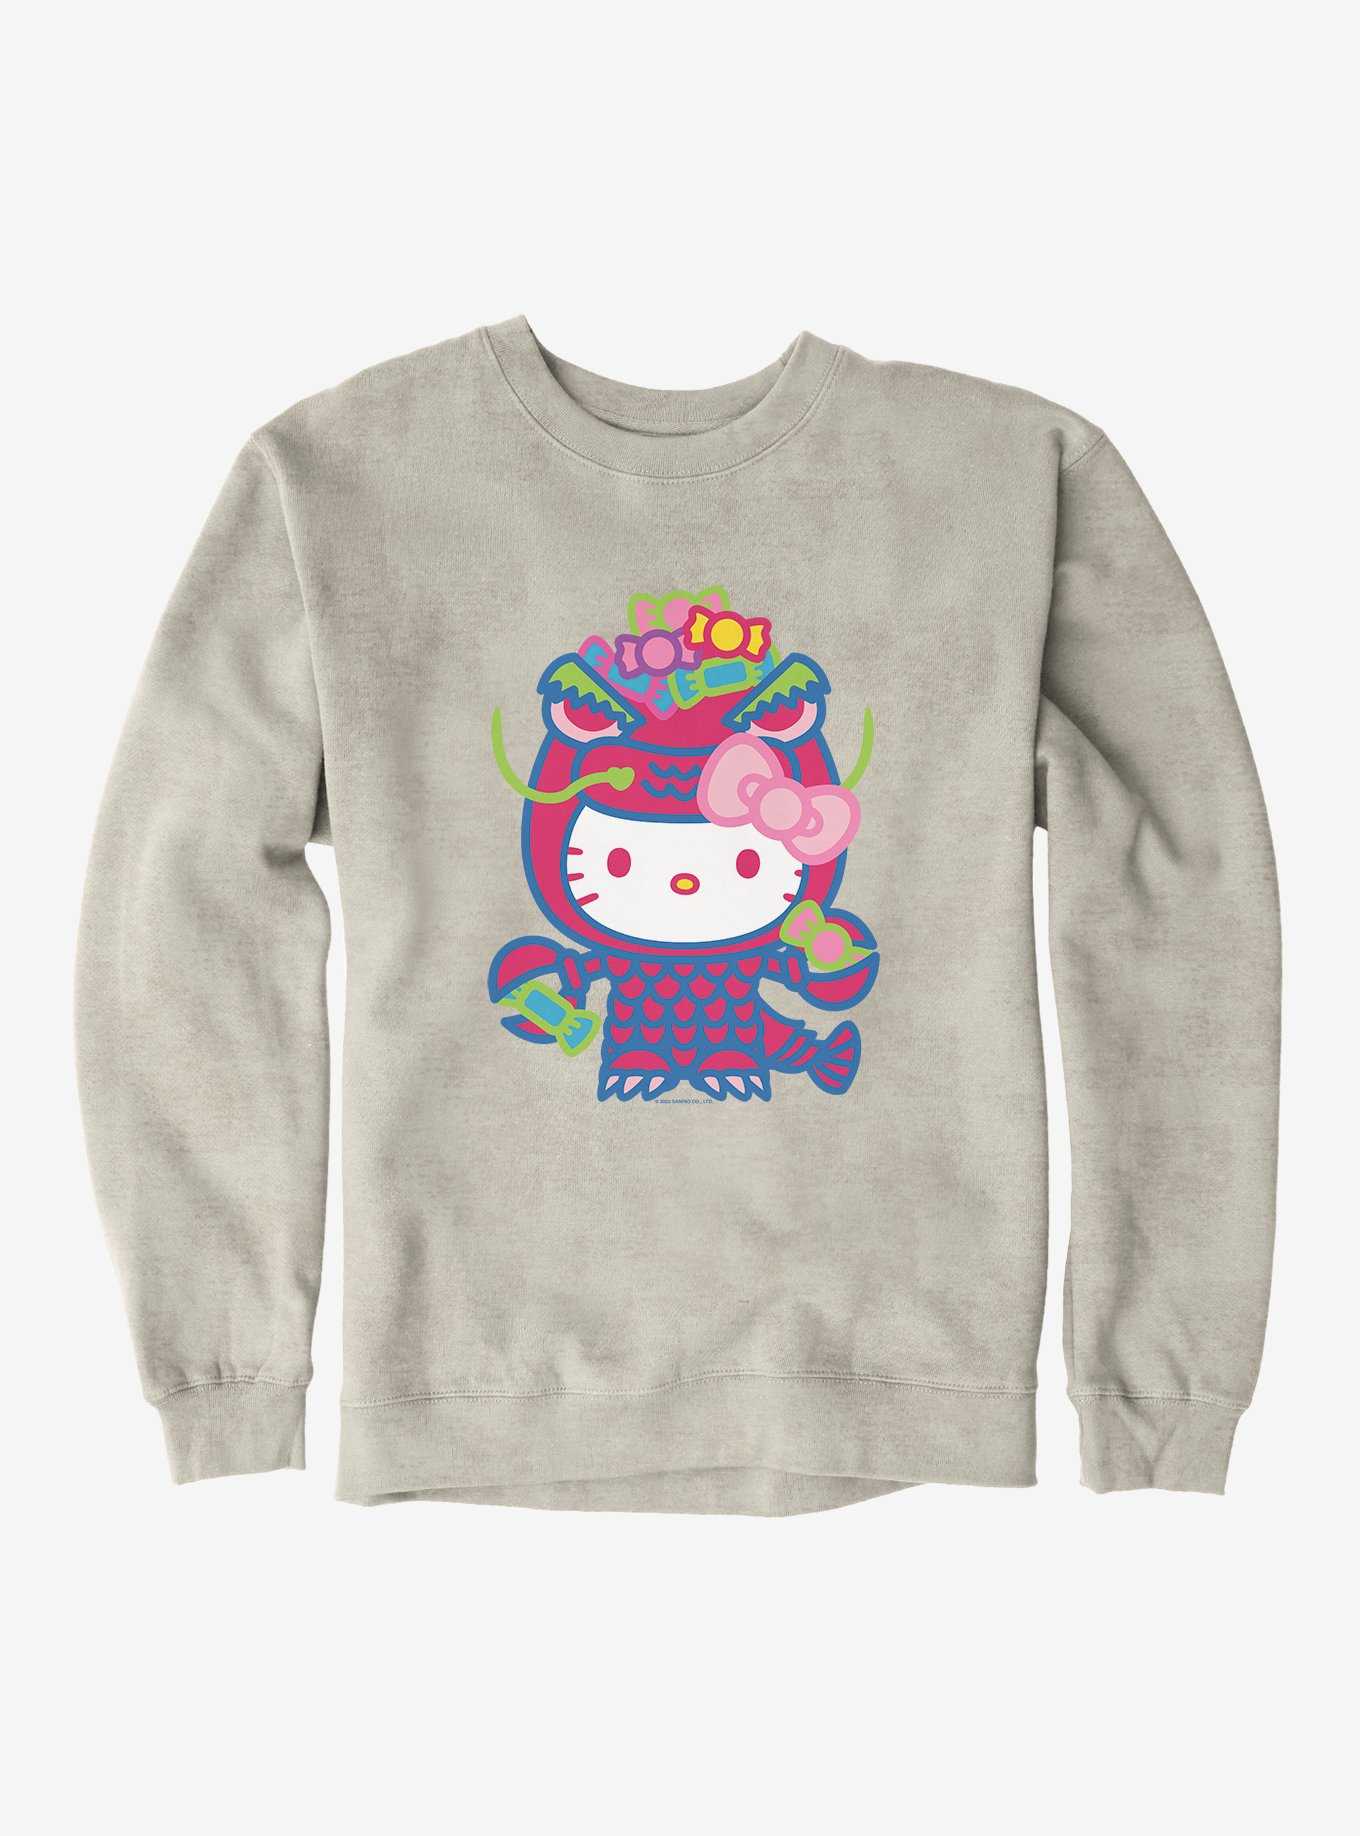 Hello Kitty Sweet Kaiju Claws Sweatshirt, , hi-res